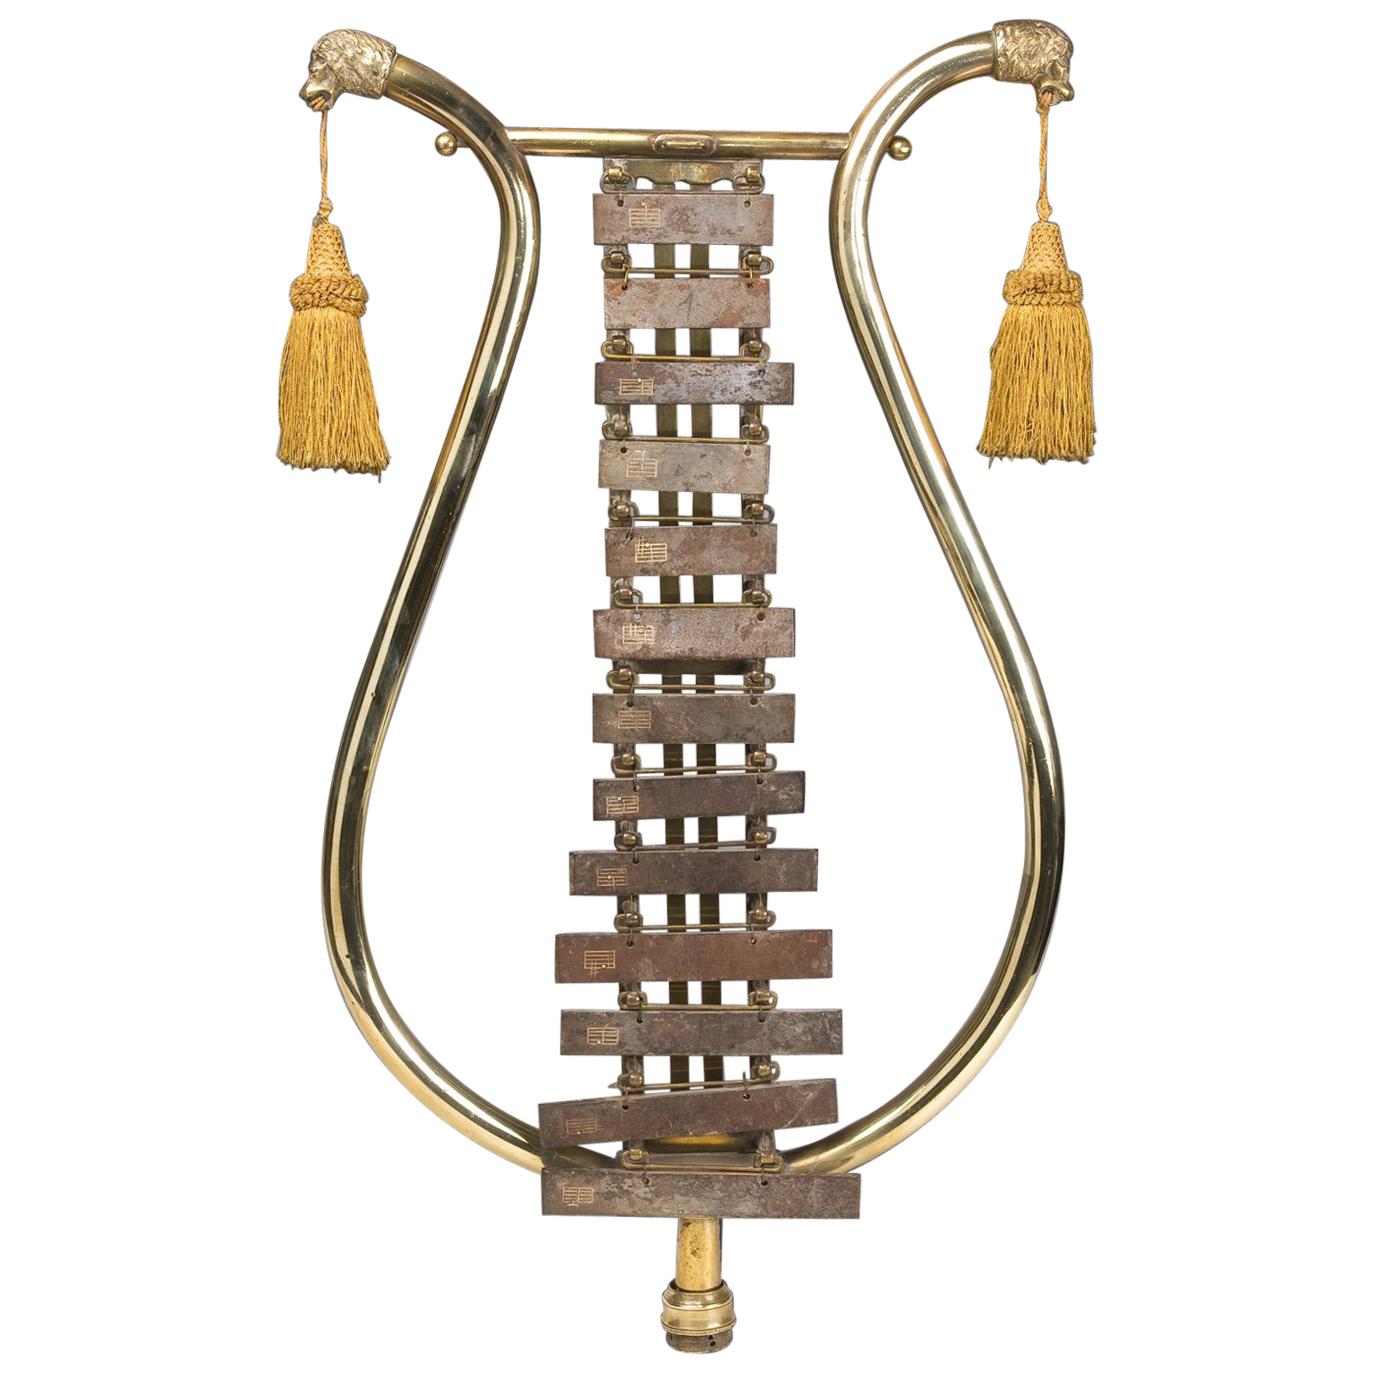 Instrument de musique xylophone, fabriqué en acier et en bronze, 19ème siècle